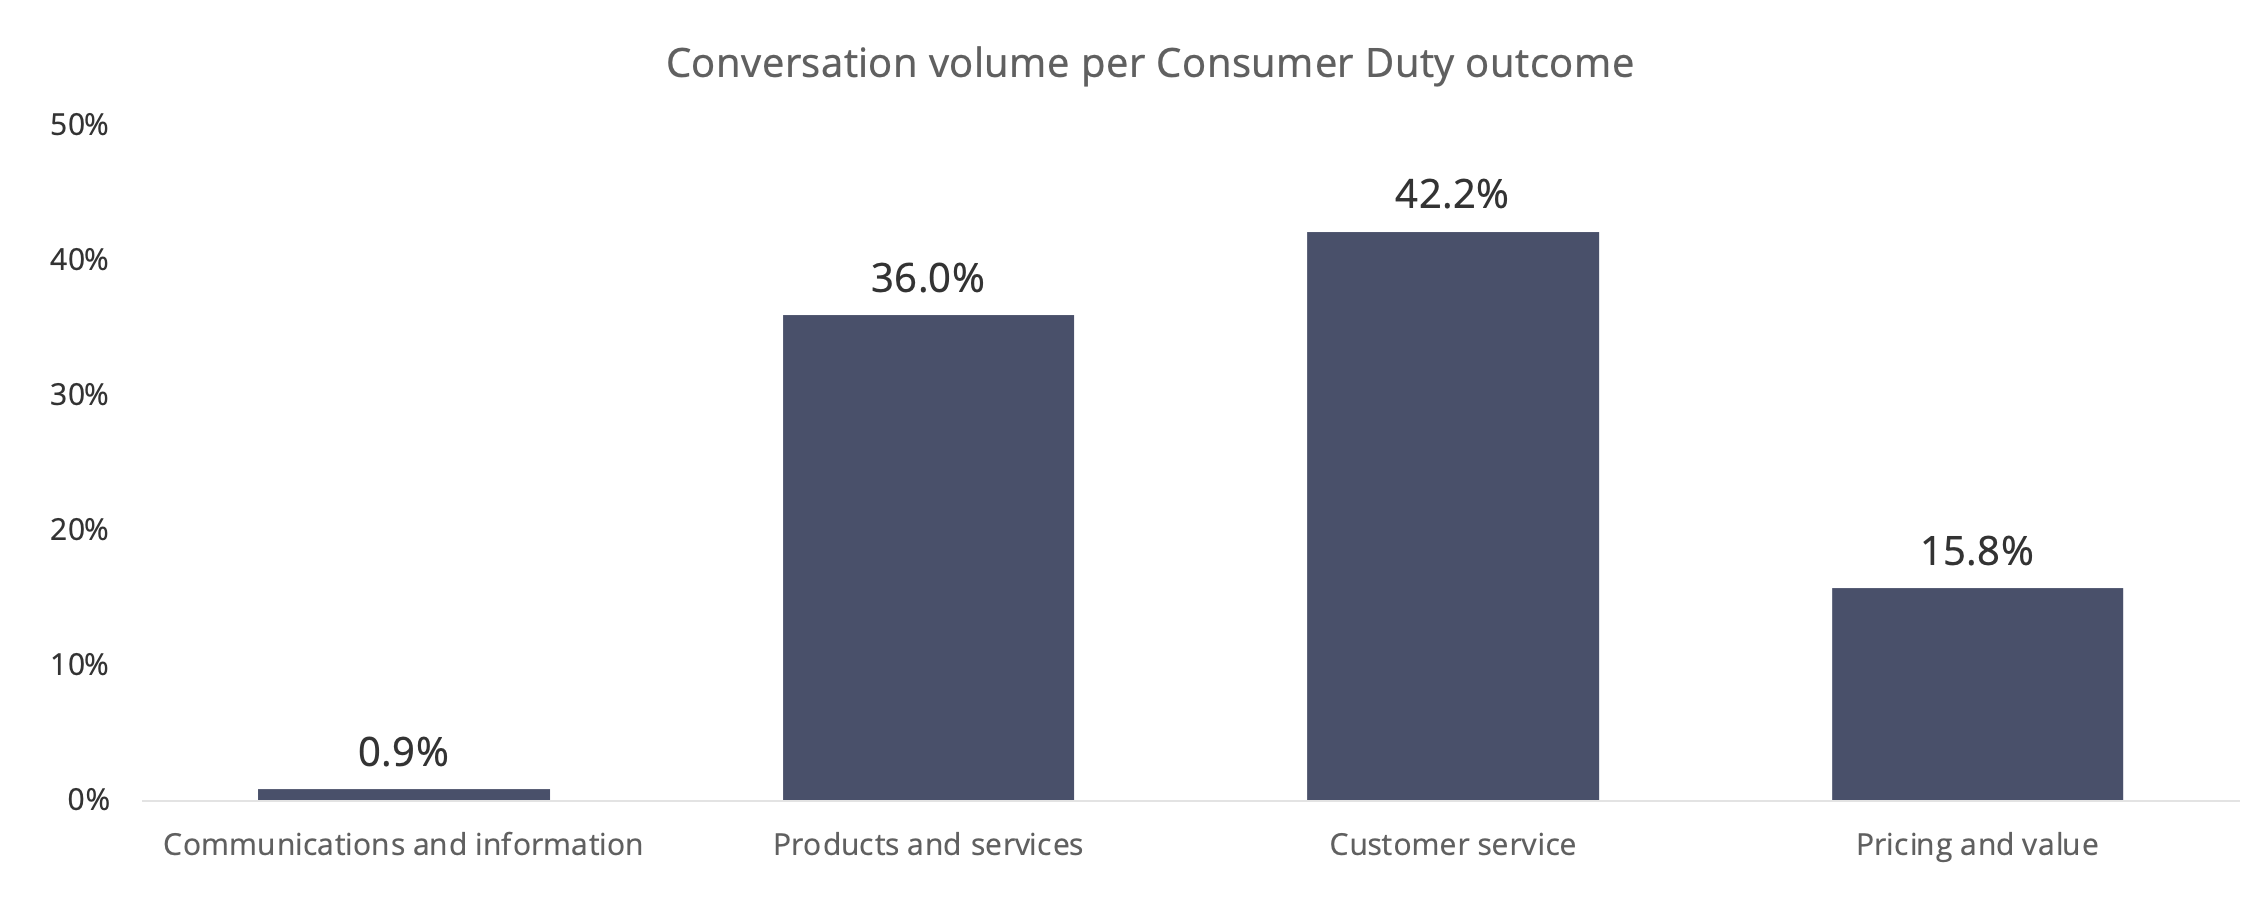 Conversation volume per consumer duty outcome